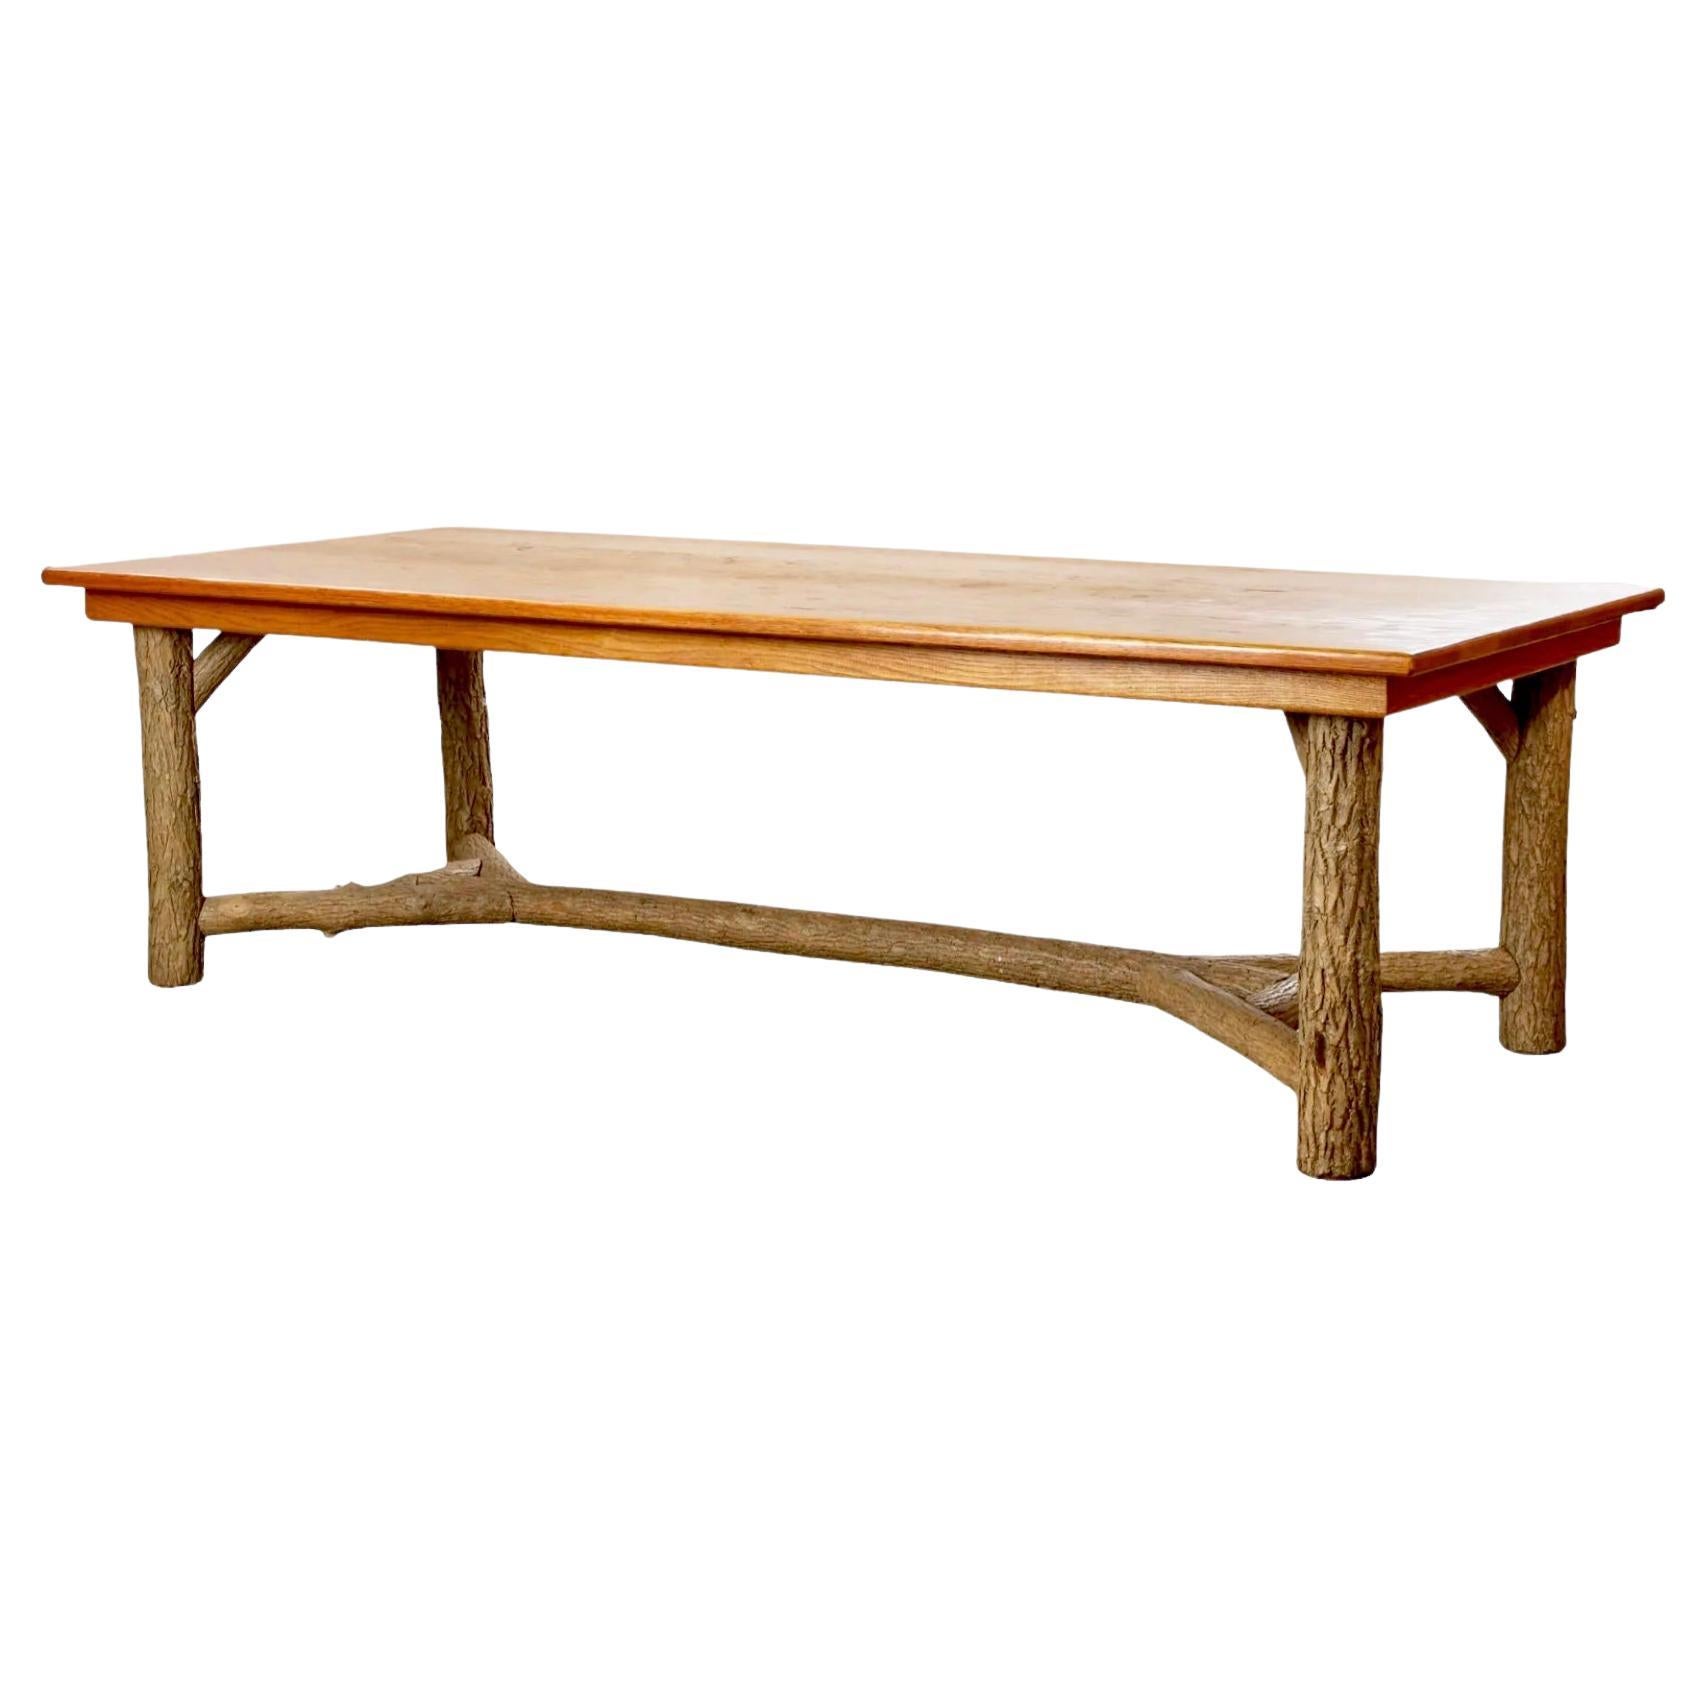 Table de salle à manger rustique ou primitive en faux bois, fabriquée à la main de manière écologique, La Lune 